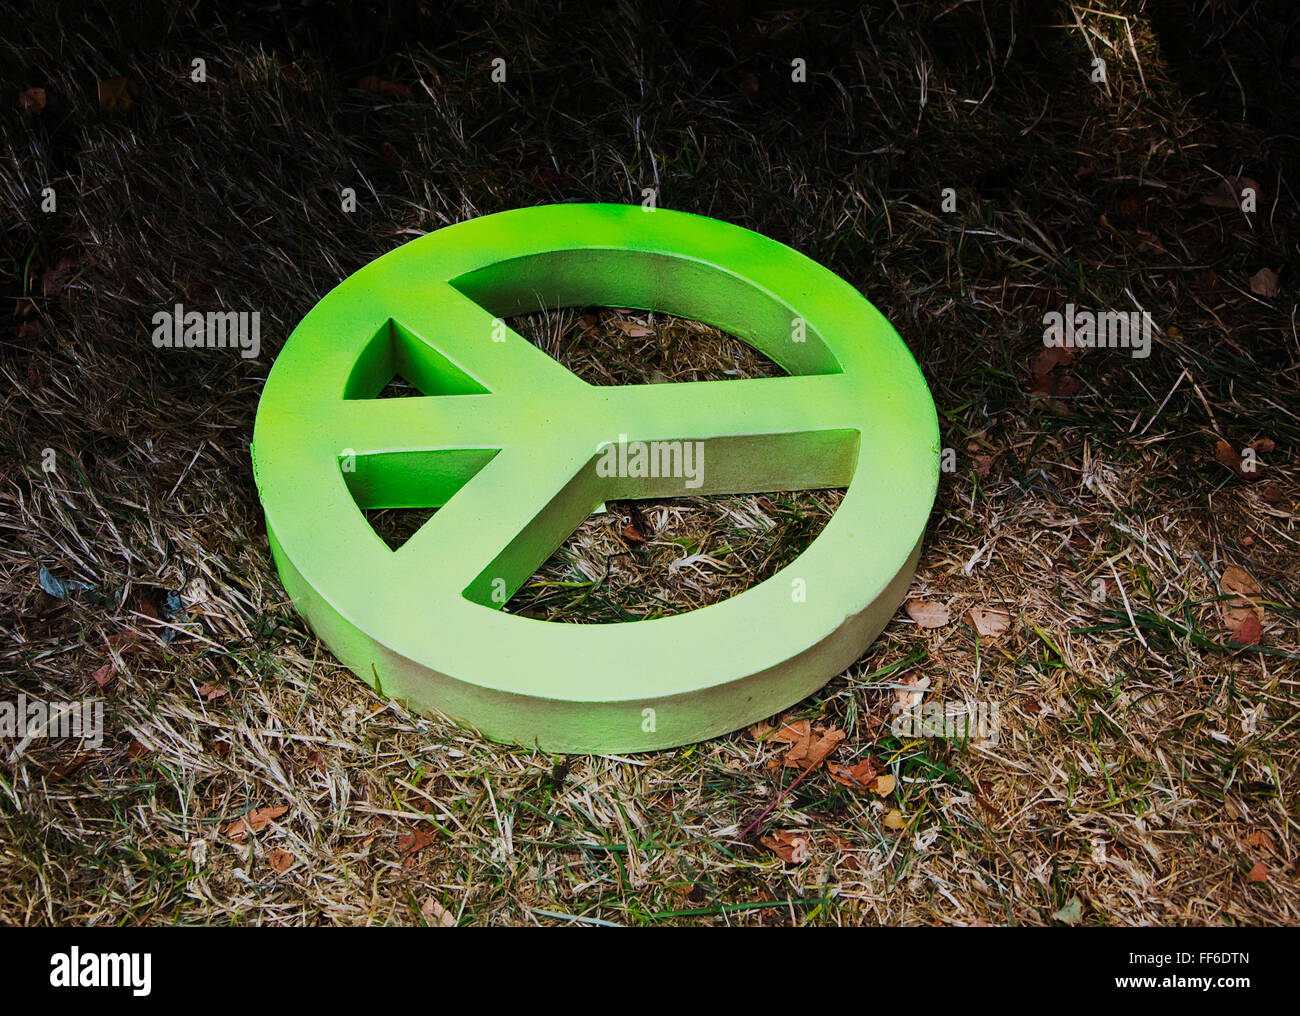 Cartone segno di pace sulla terra, colorato di verde. Foto Stock